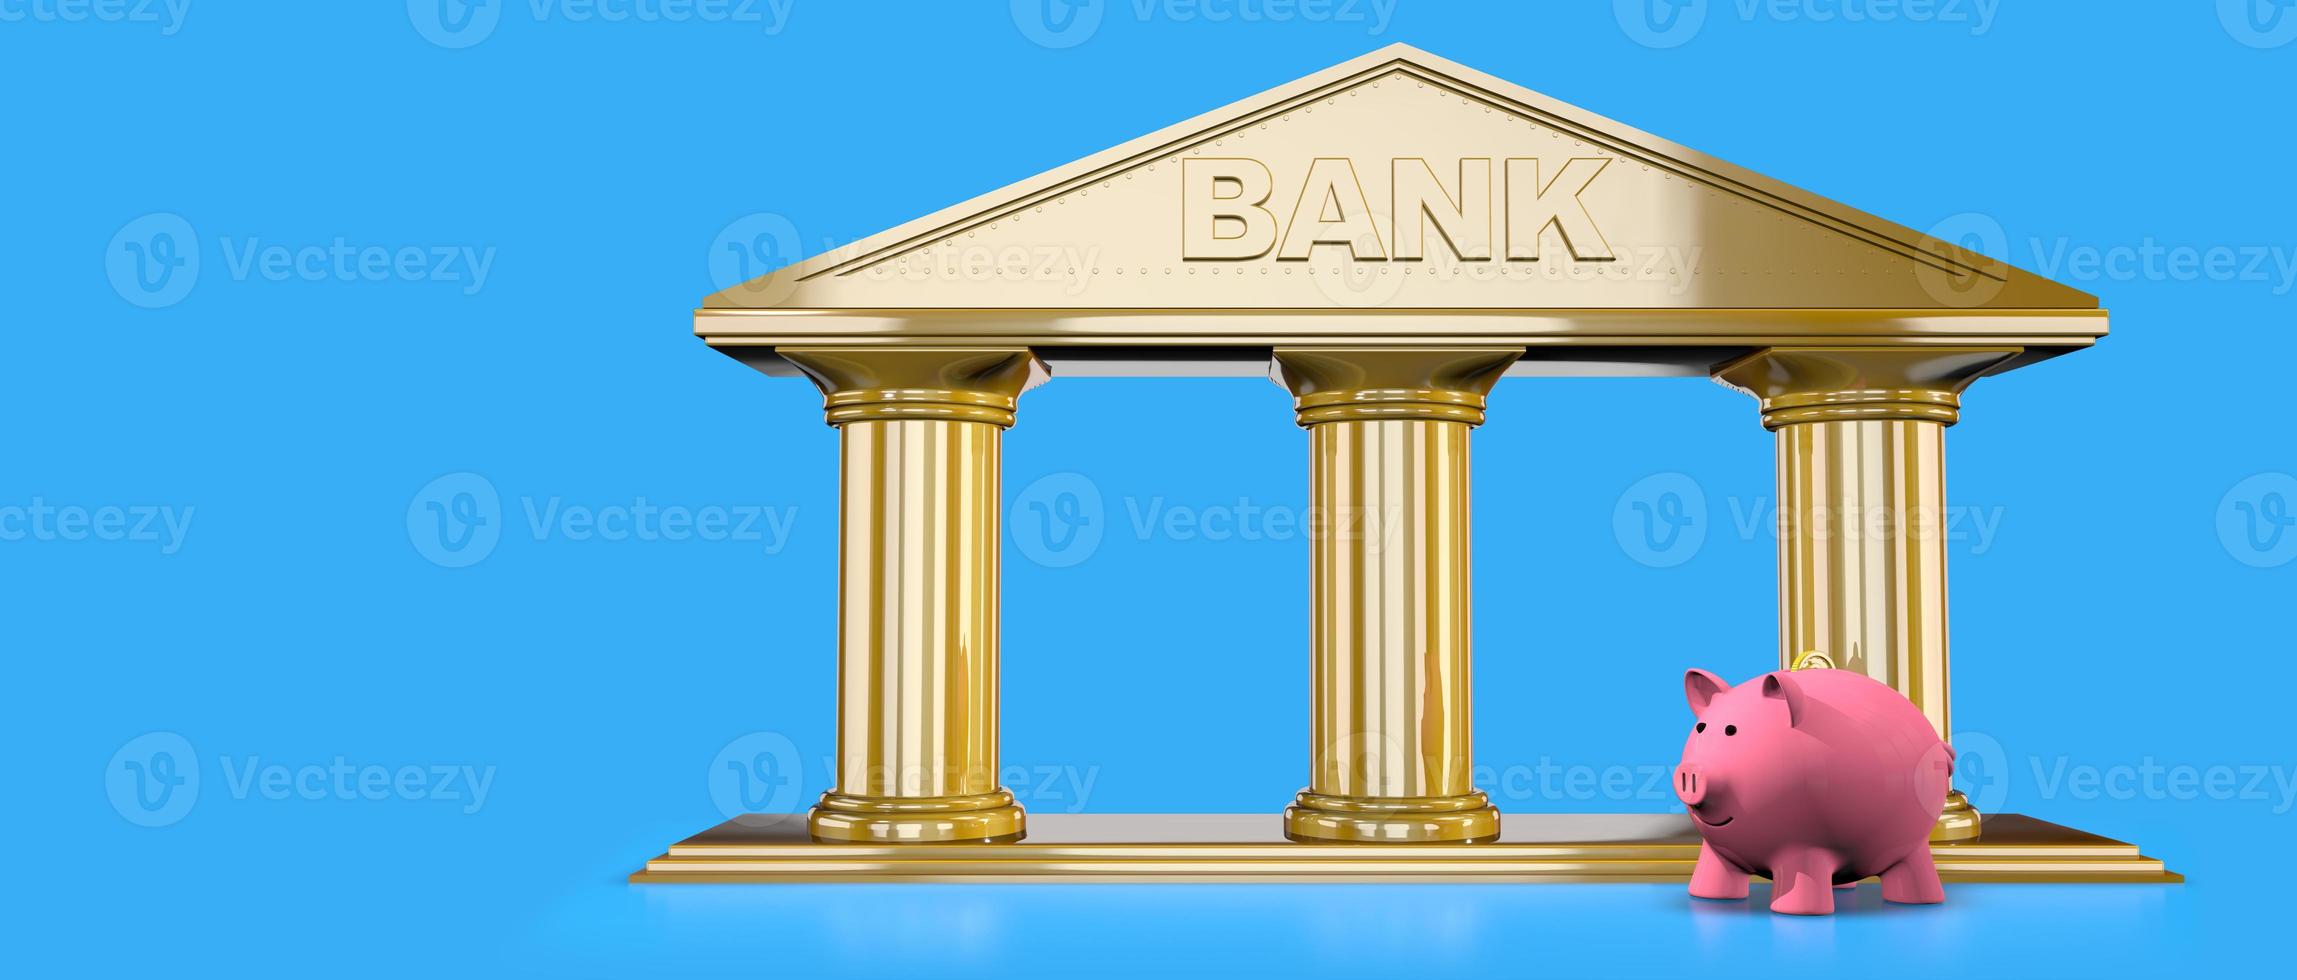 Vorderseite Aussicht von Rosa Keramik Schweinchen Bank Stehen auf reflektierend Gold texturiert Bank Symbol gegen Blau Hintergrund foto